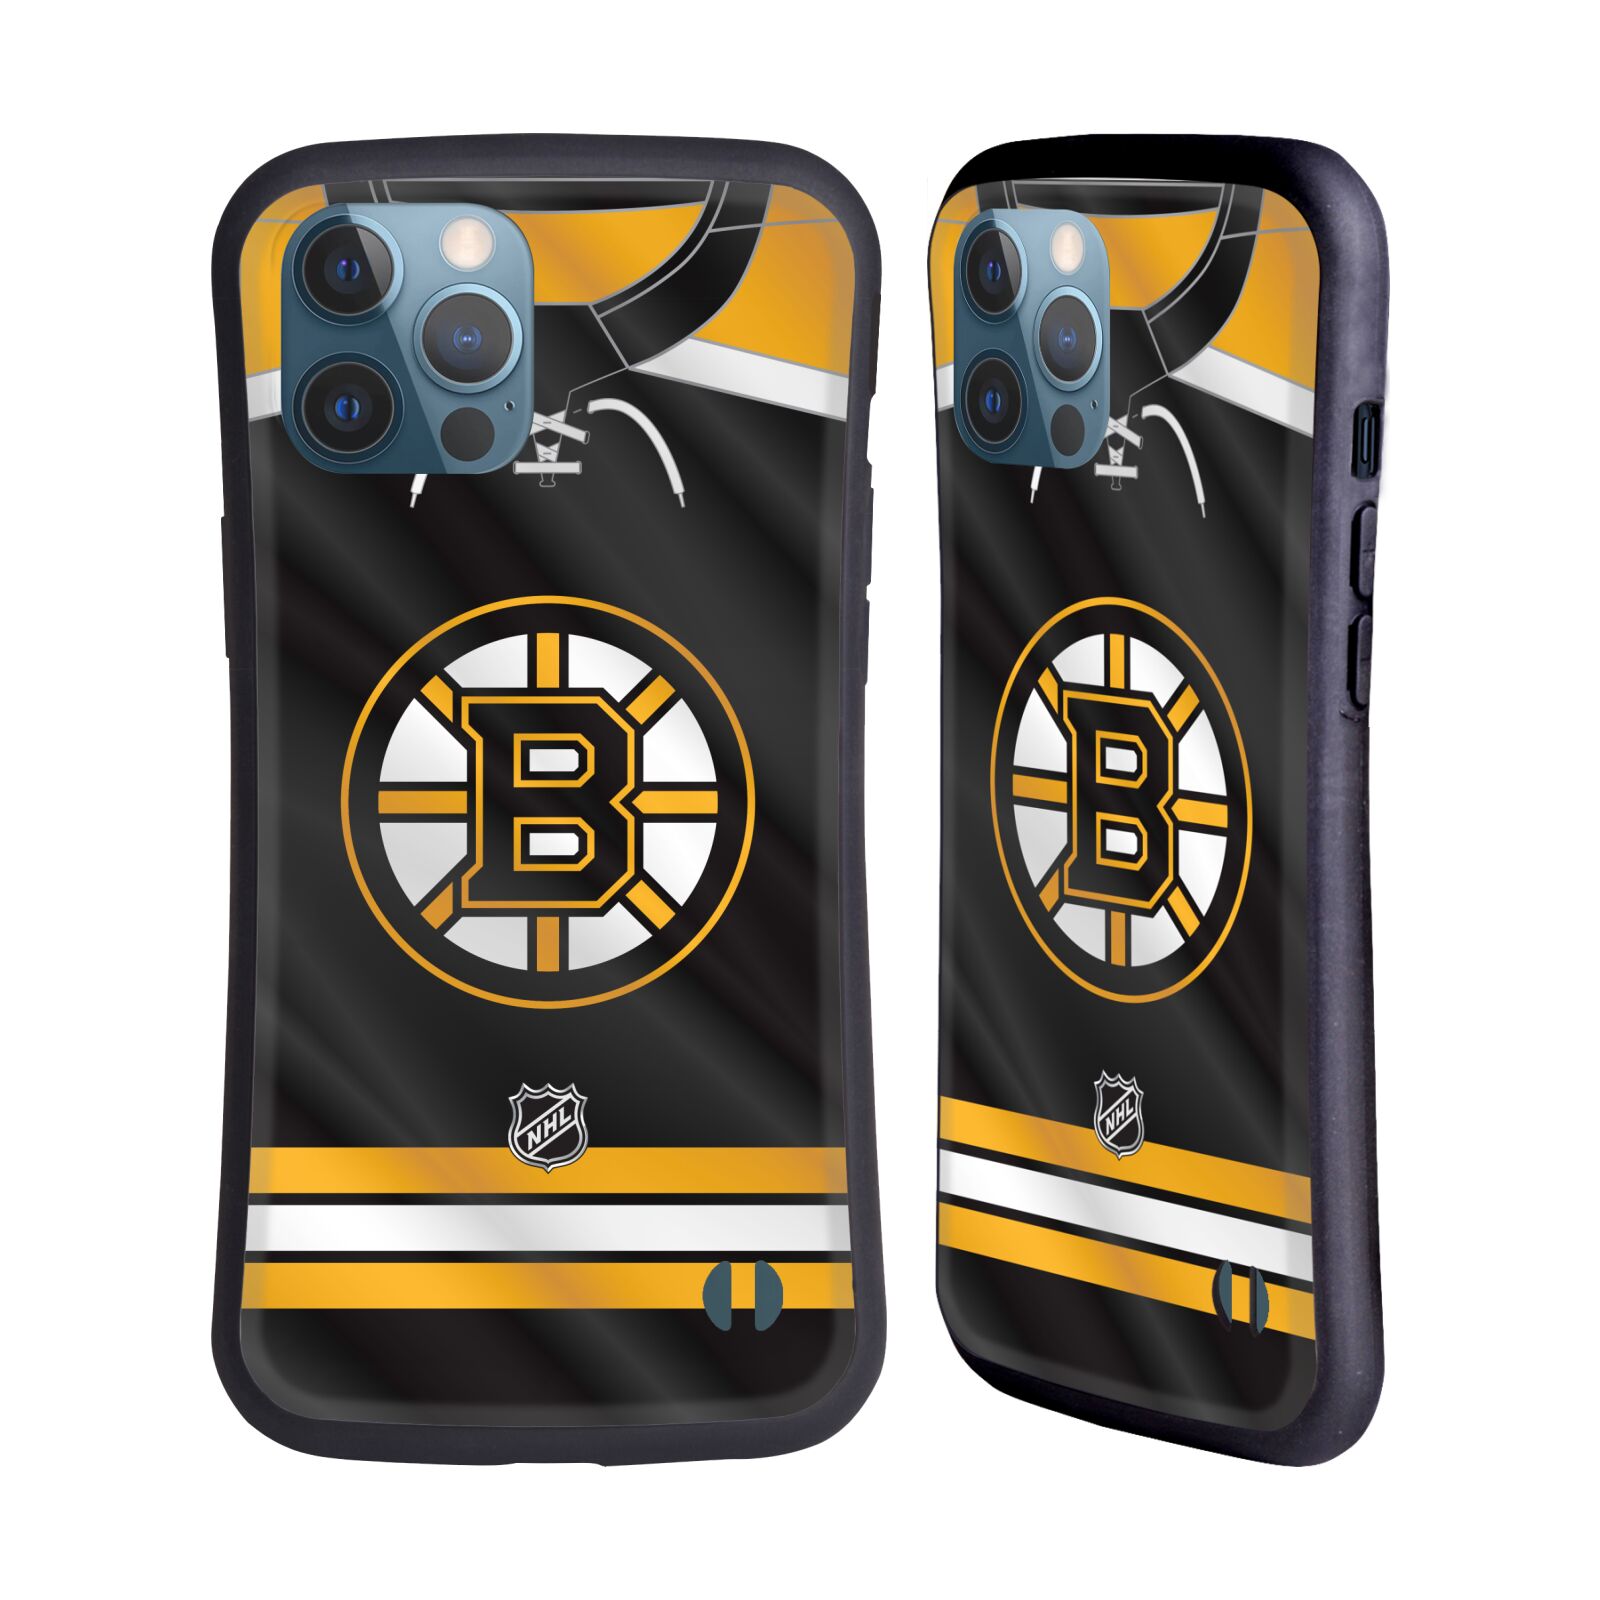 Obal na mobil Apple iPhone 12 PRO MAX - HEAD CASE - NHL - Boston Bruins znak na dresu